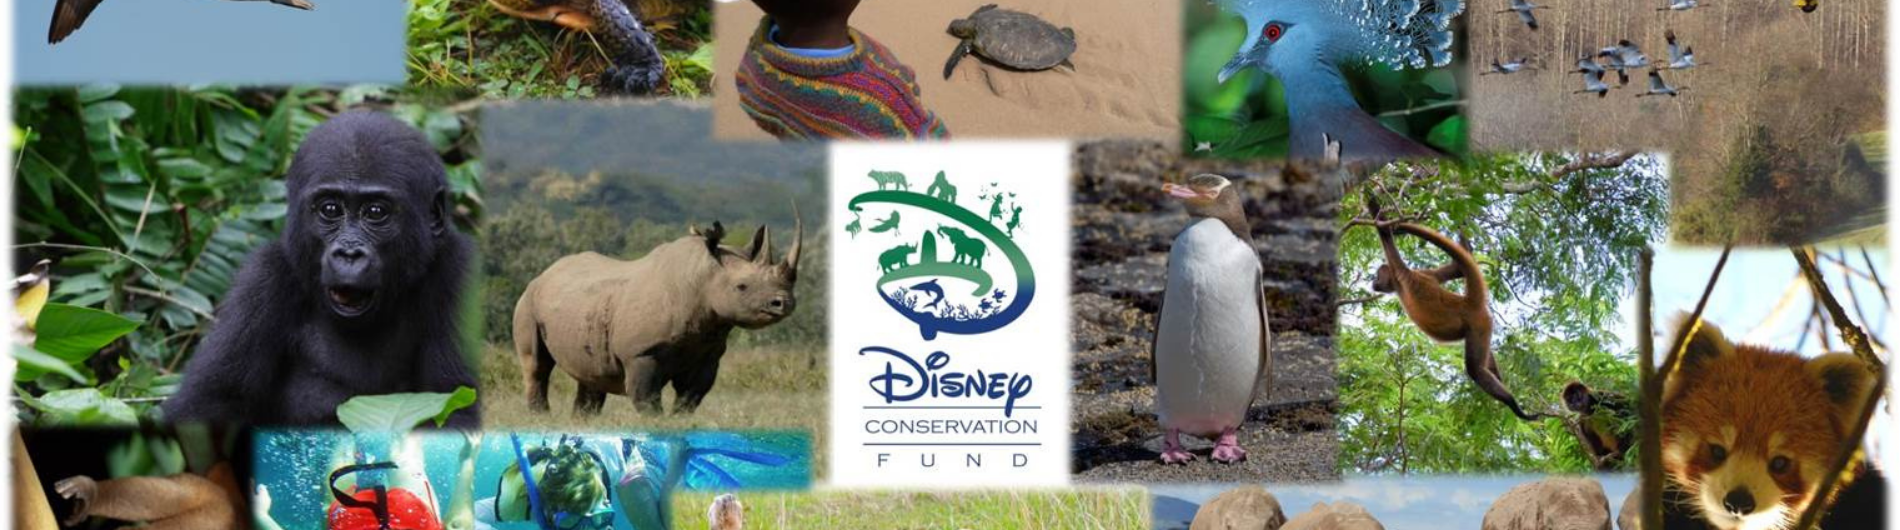 Fondo para la Conservación de Disney